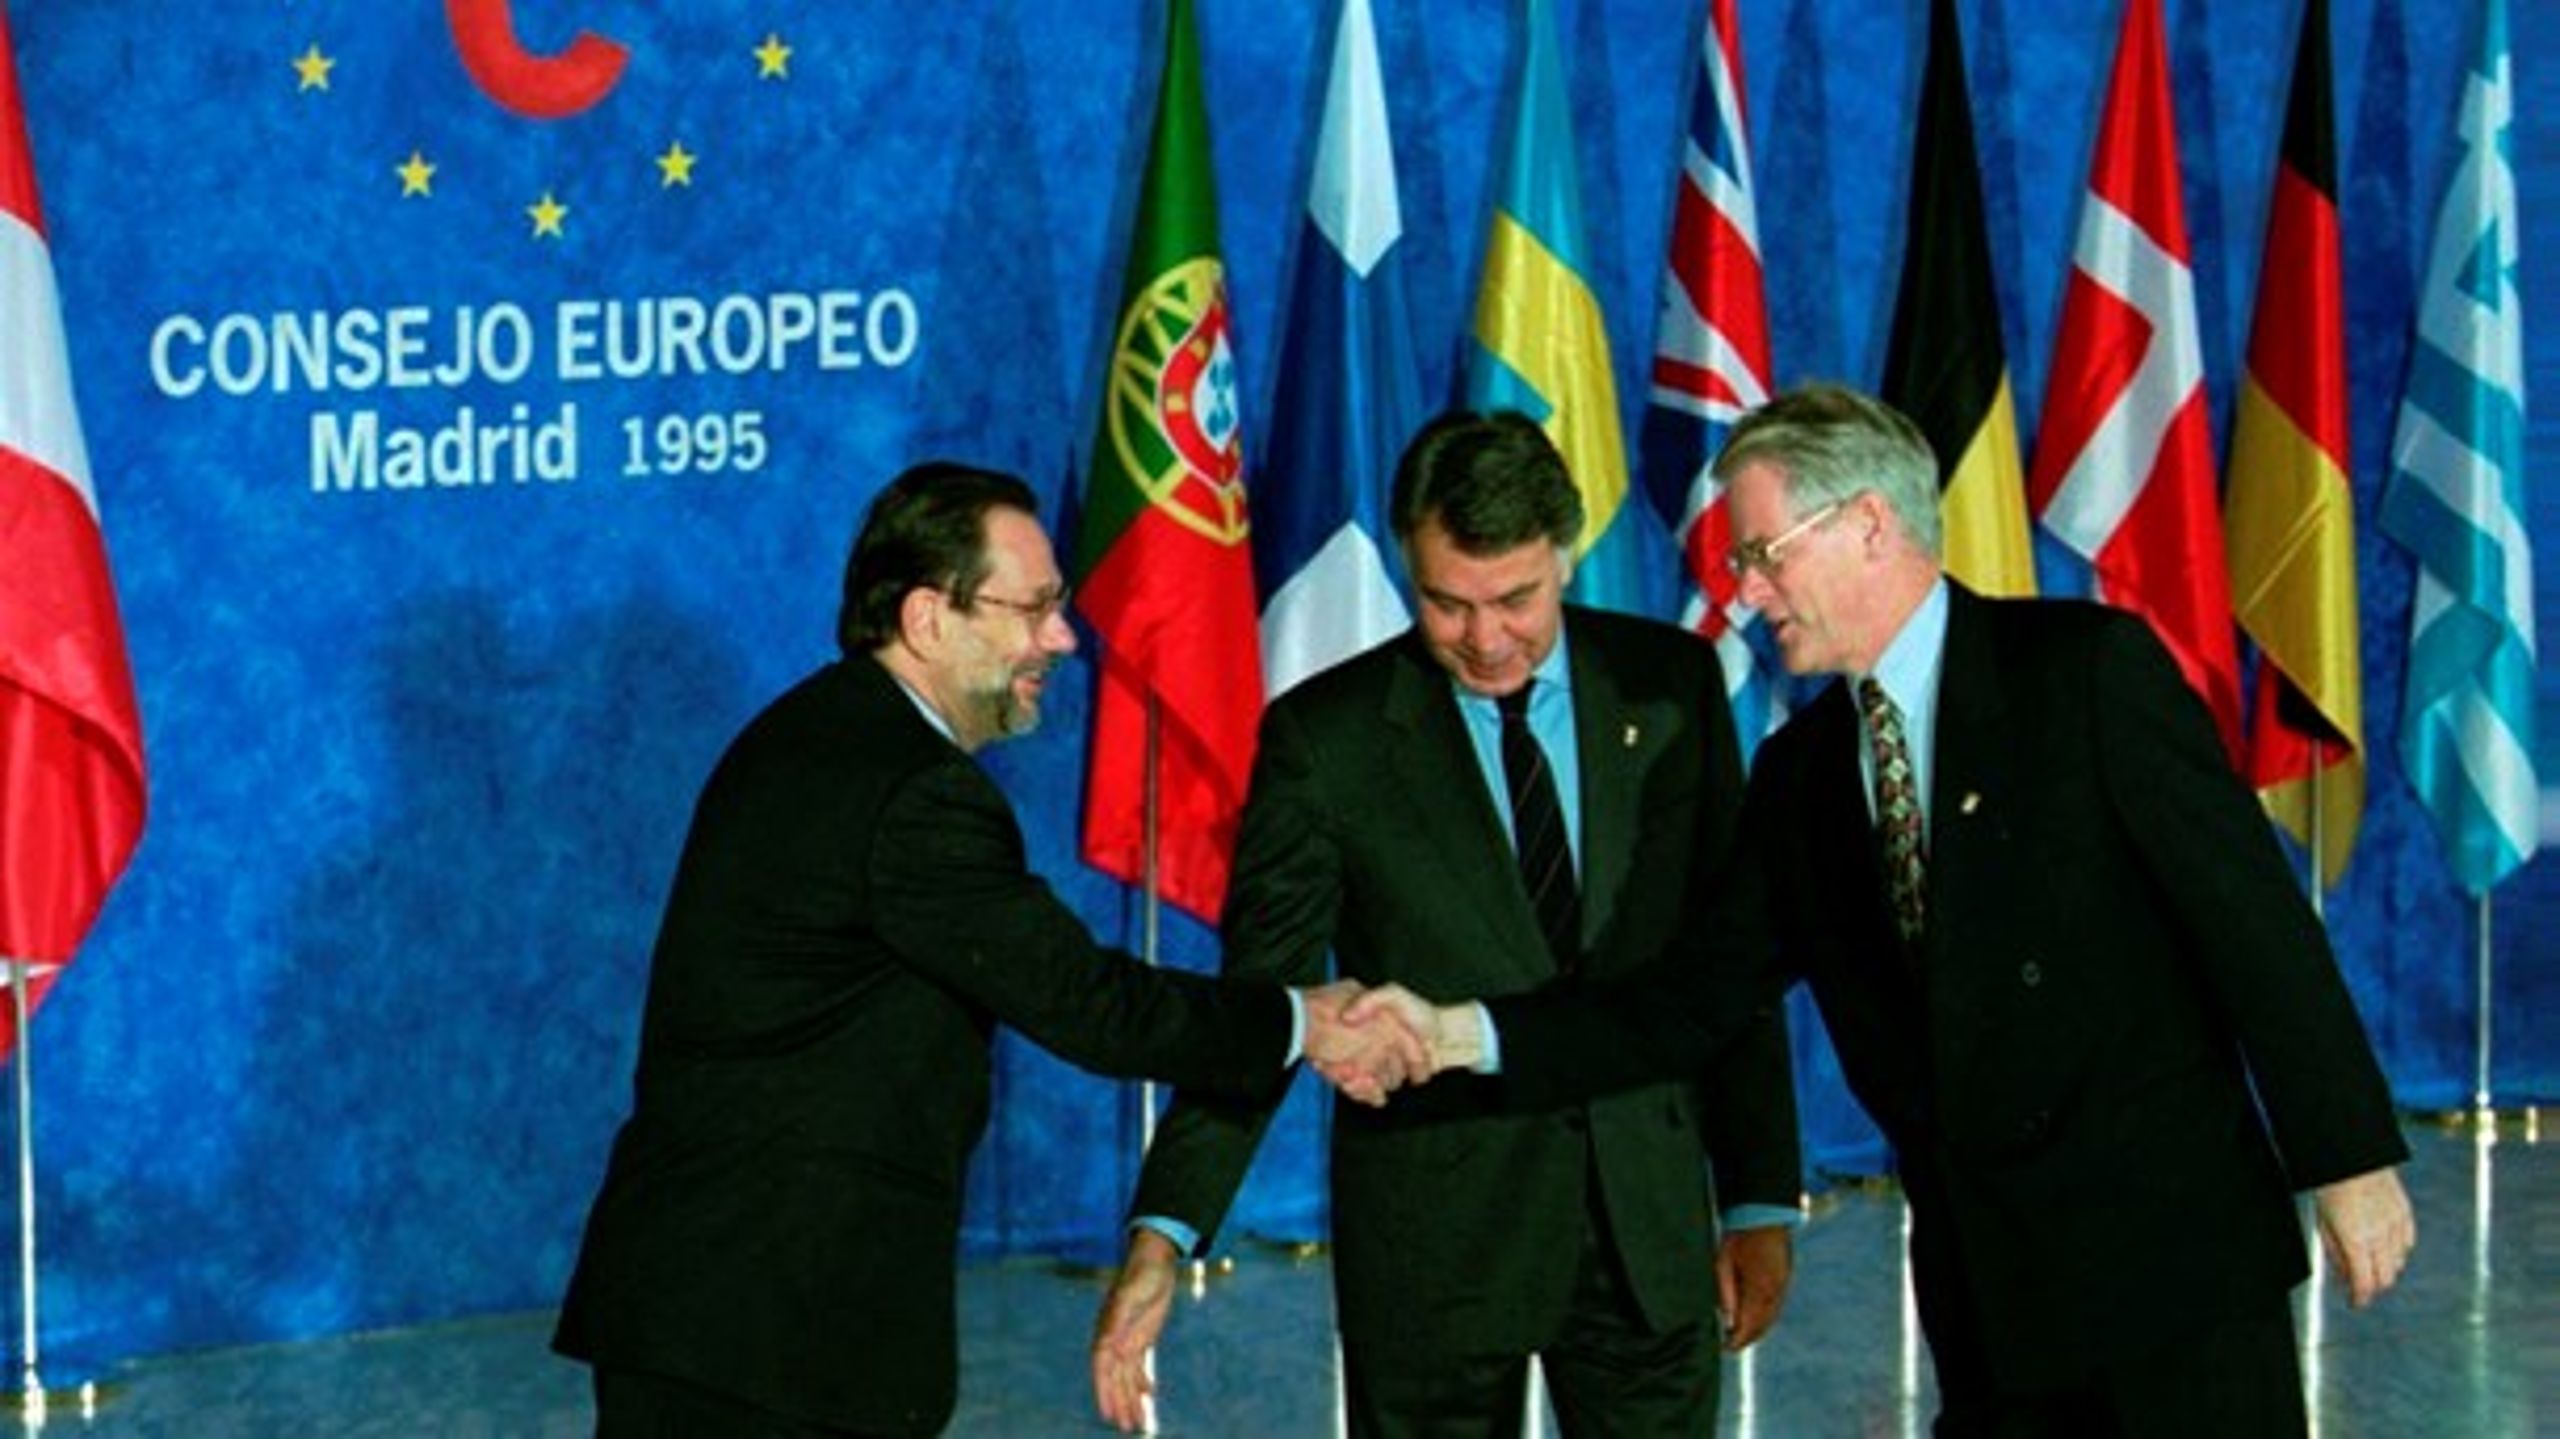 EU 1995 när Sverige gick med. Dåvarande statsminister Ingvar Carlsson hälsar på ordförandelandet&nbsp;Spaniens utrikesminister&nbsp;Javier Solana, mellan dem står Spaniens statsminister Felipe Gonzalez.<br>